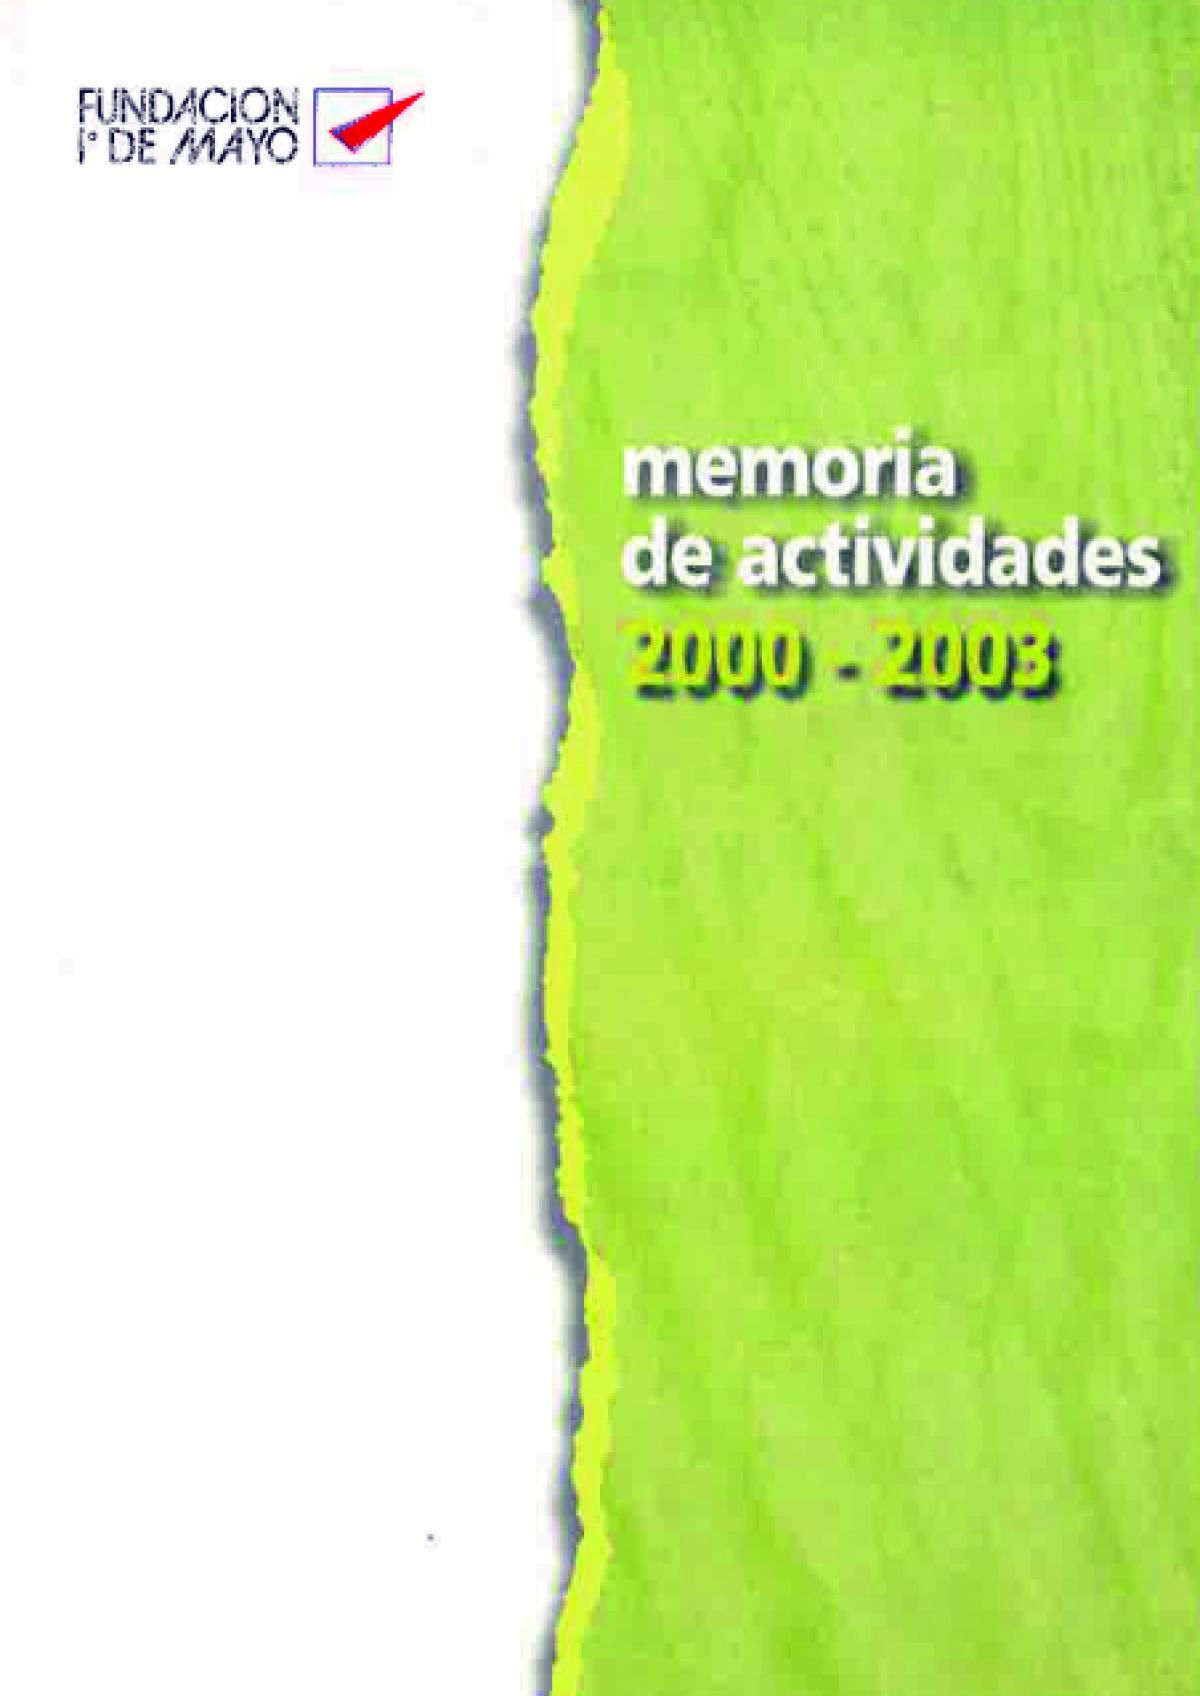 Portada Memoria 2000-2003